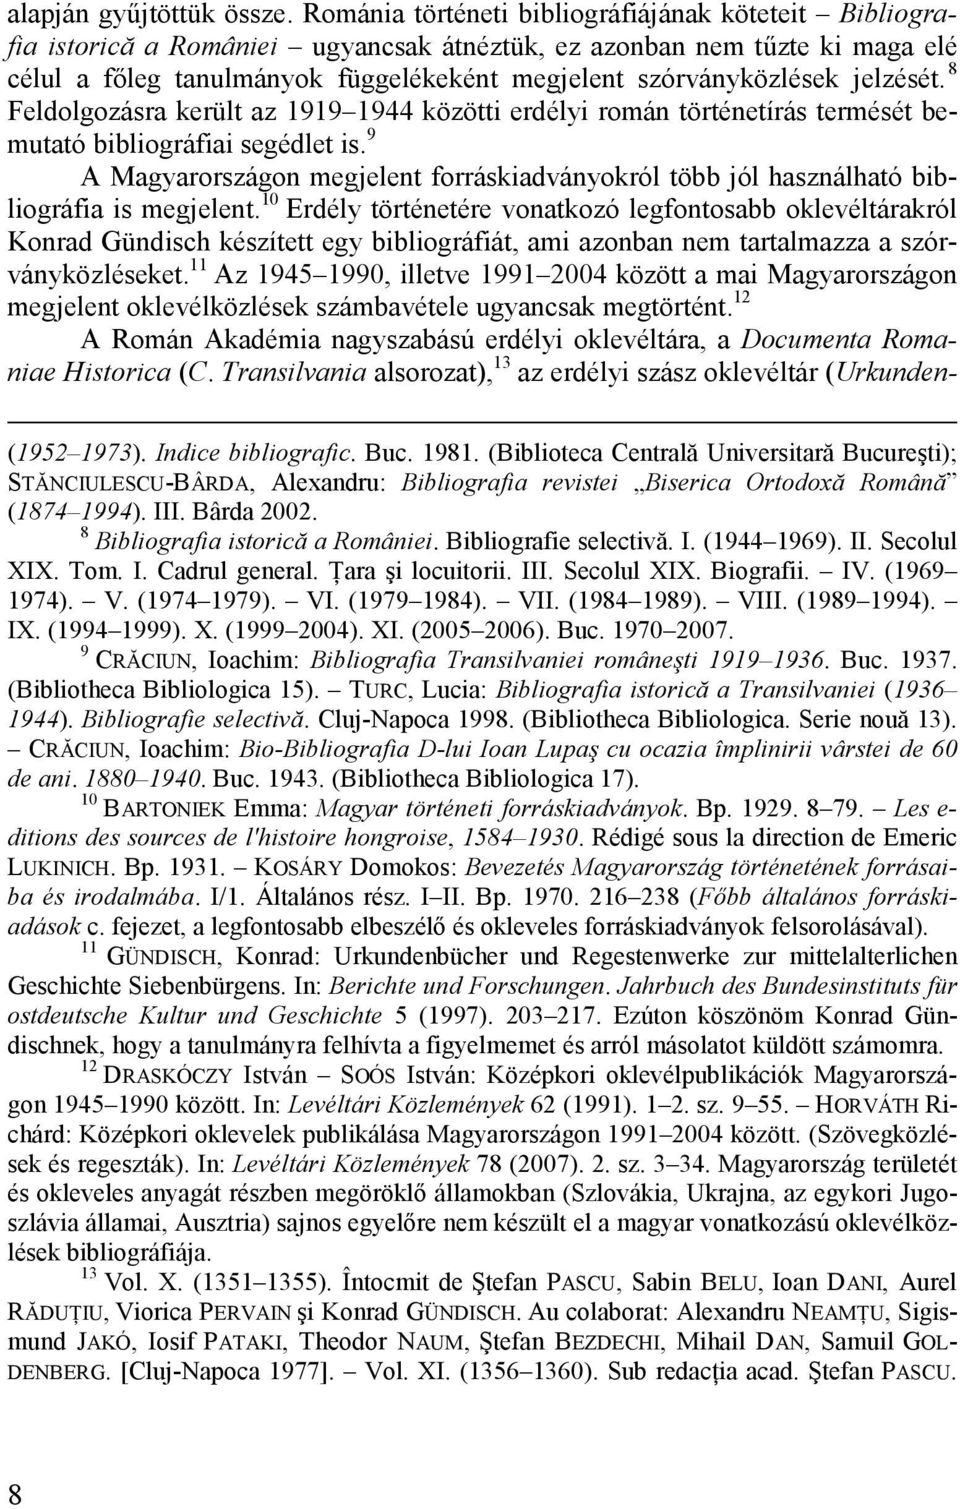 jelzését. 8 Feldolgozásra került az 1919 1944 közötti erdélyi román történetírás termését bemutató bibliográfiai segédlet is.